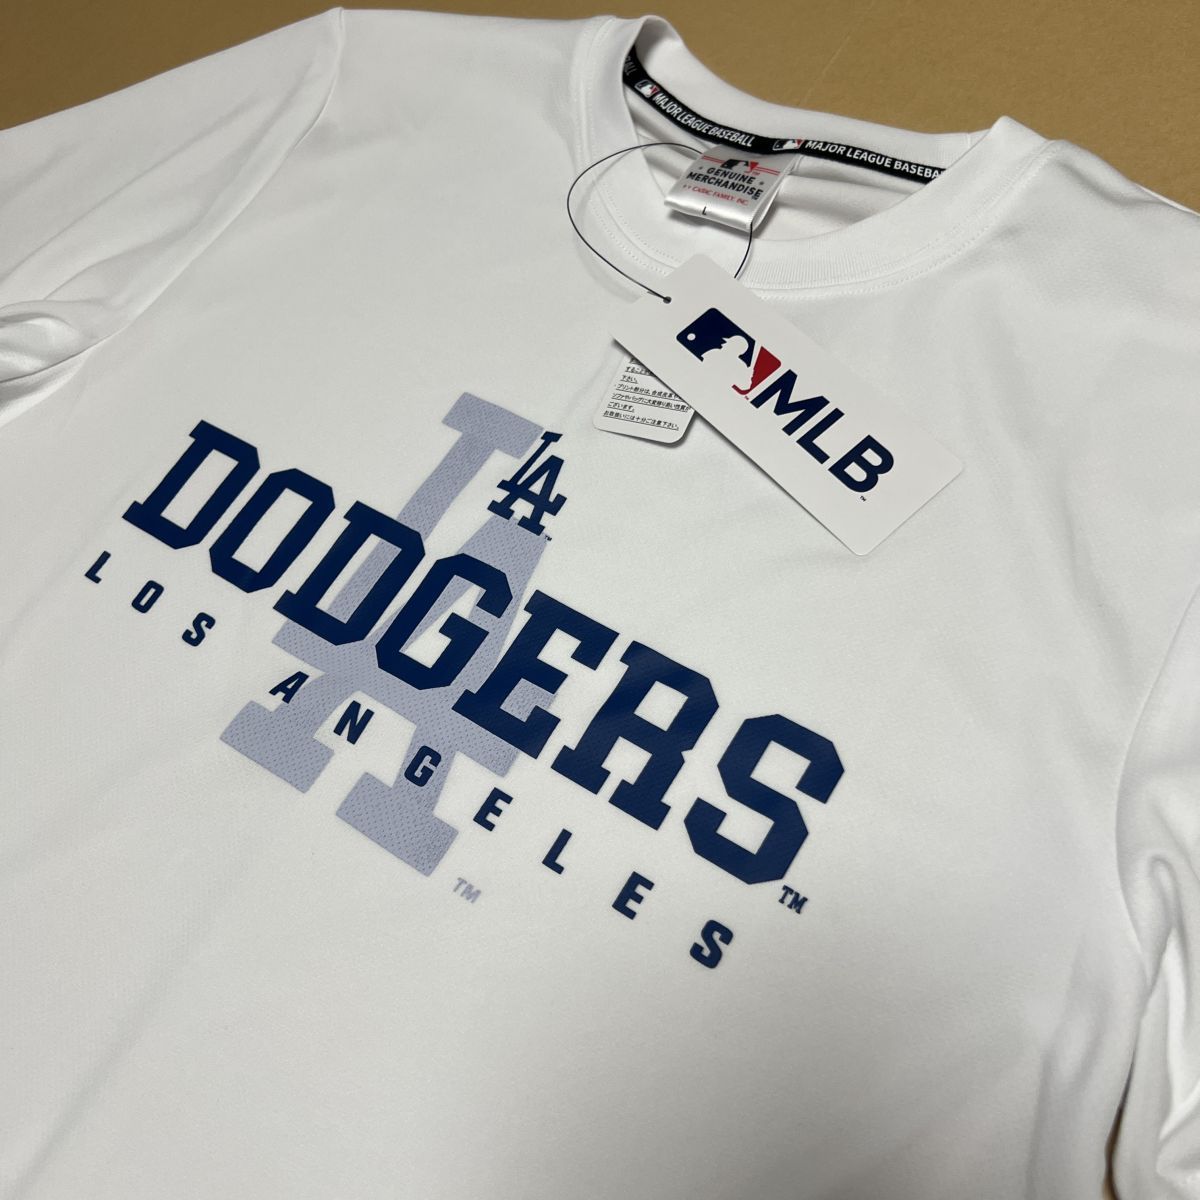 送料390円可能商品 ドジャース Dodgers MLB 新品 メンズ メジャーリーグ 大谷翔平 山本由伸 半袖 Tシャツ[C5437MR-N0-LL] 一 三 参 QWER